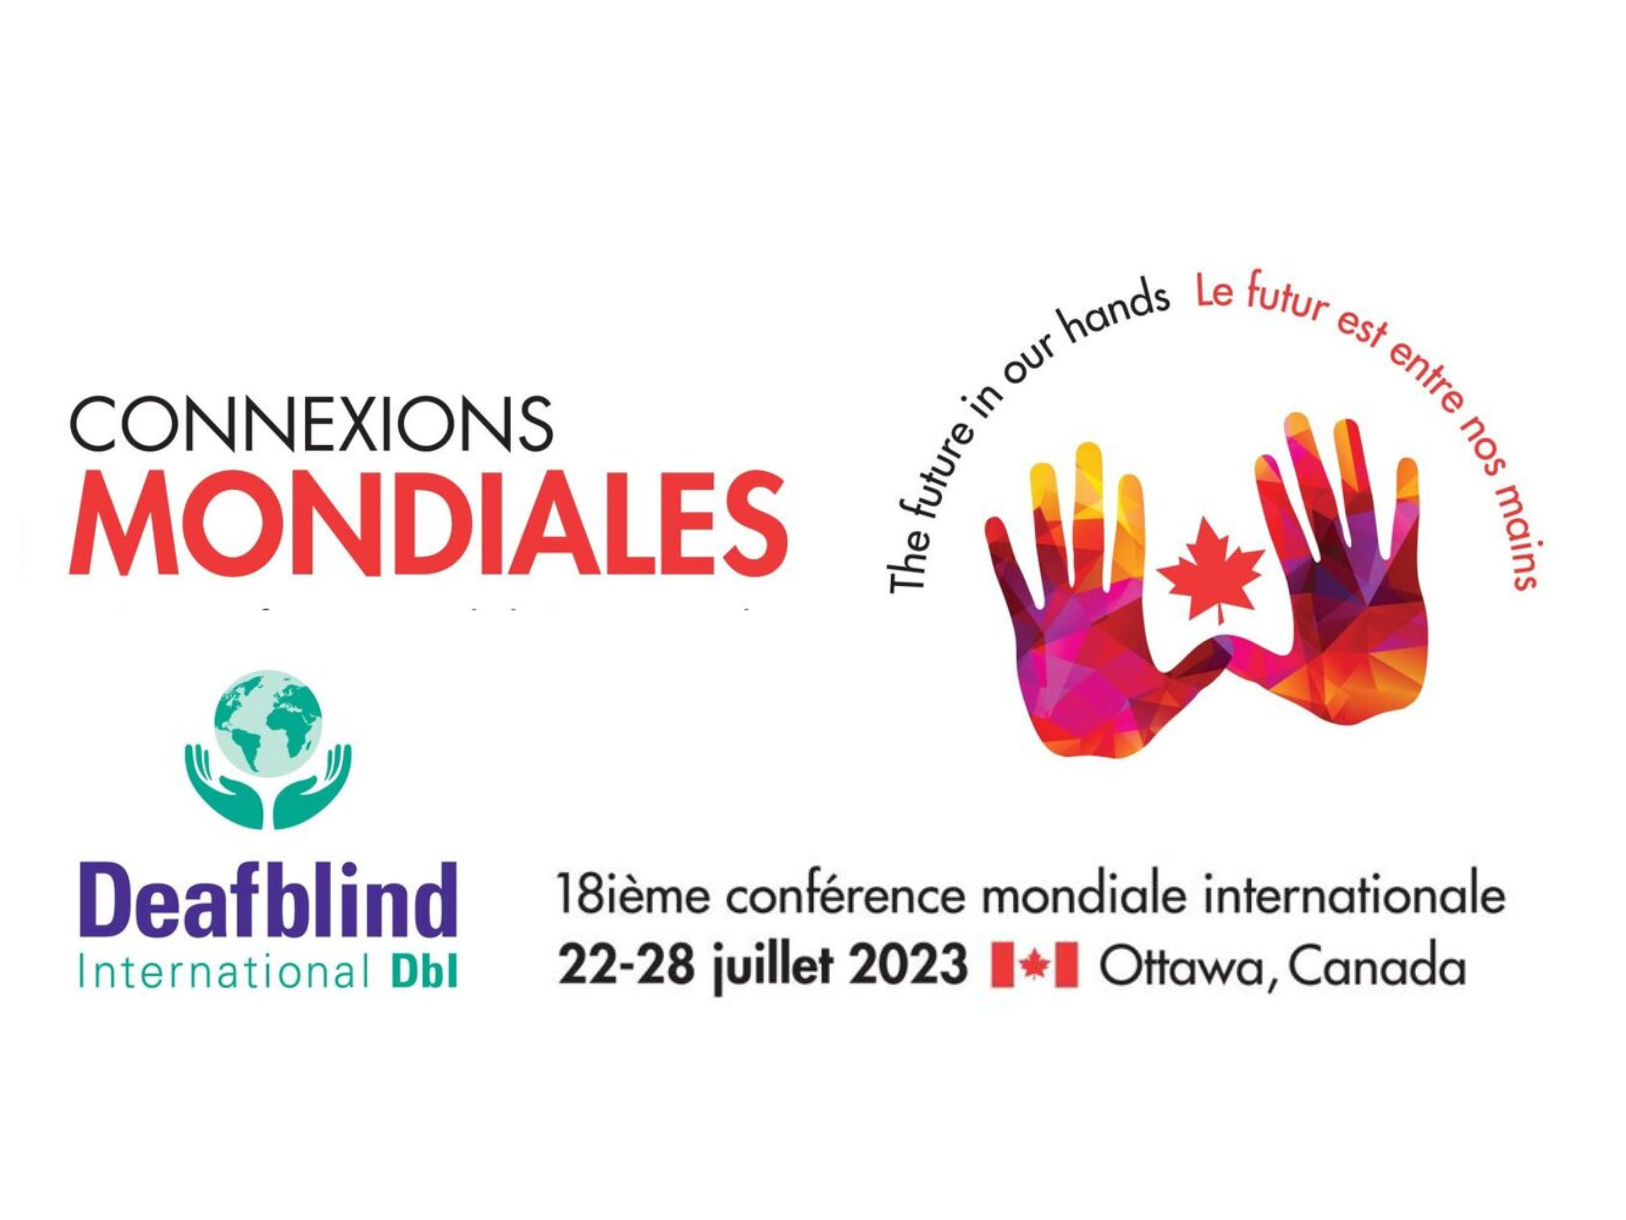 La 18e Conférence mondiale internationale des sourds-aveugles se tiendra à Ottawa, au Canada, du samedi 22 juillet au vendredi 28 juillet 2023 !  Le thème de cette année est "Connexions mondiales : L'avenir entre nos mains